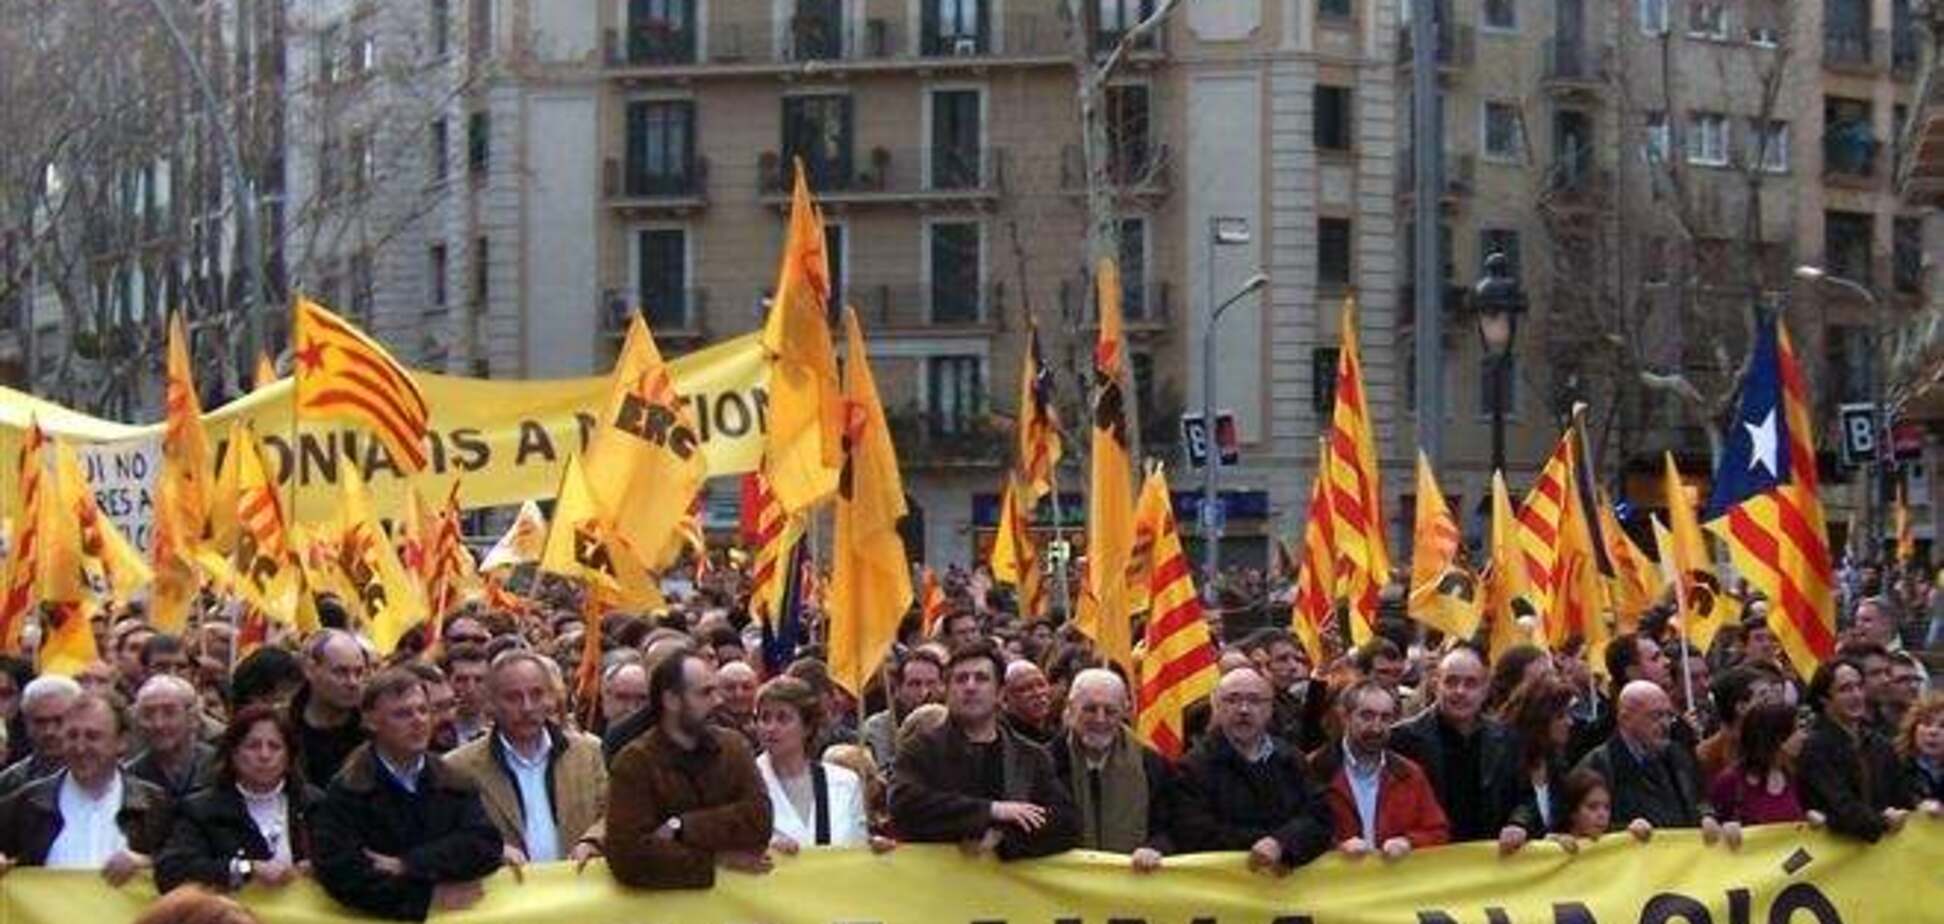 Іспанія заборонила сепаратистський референдум про відділення Каталонії